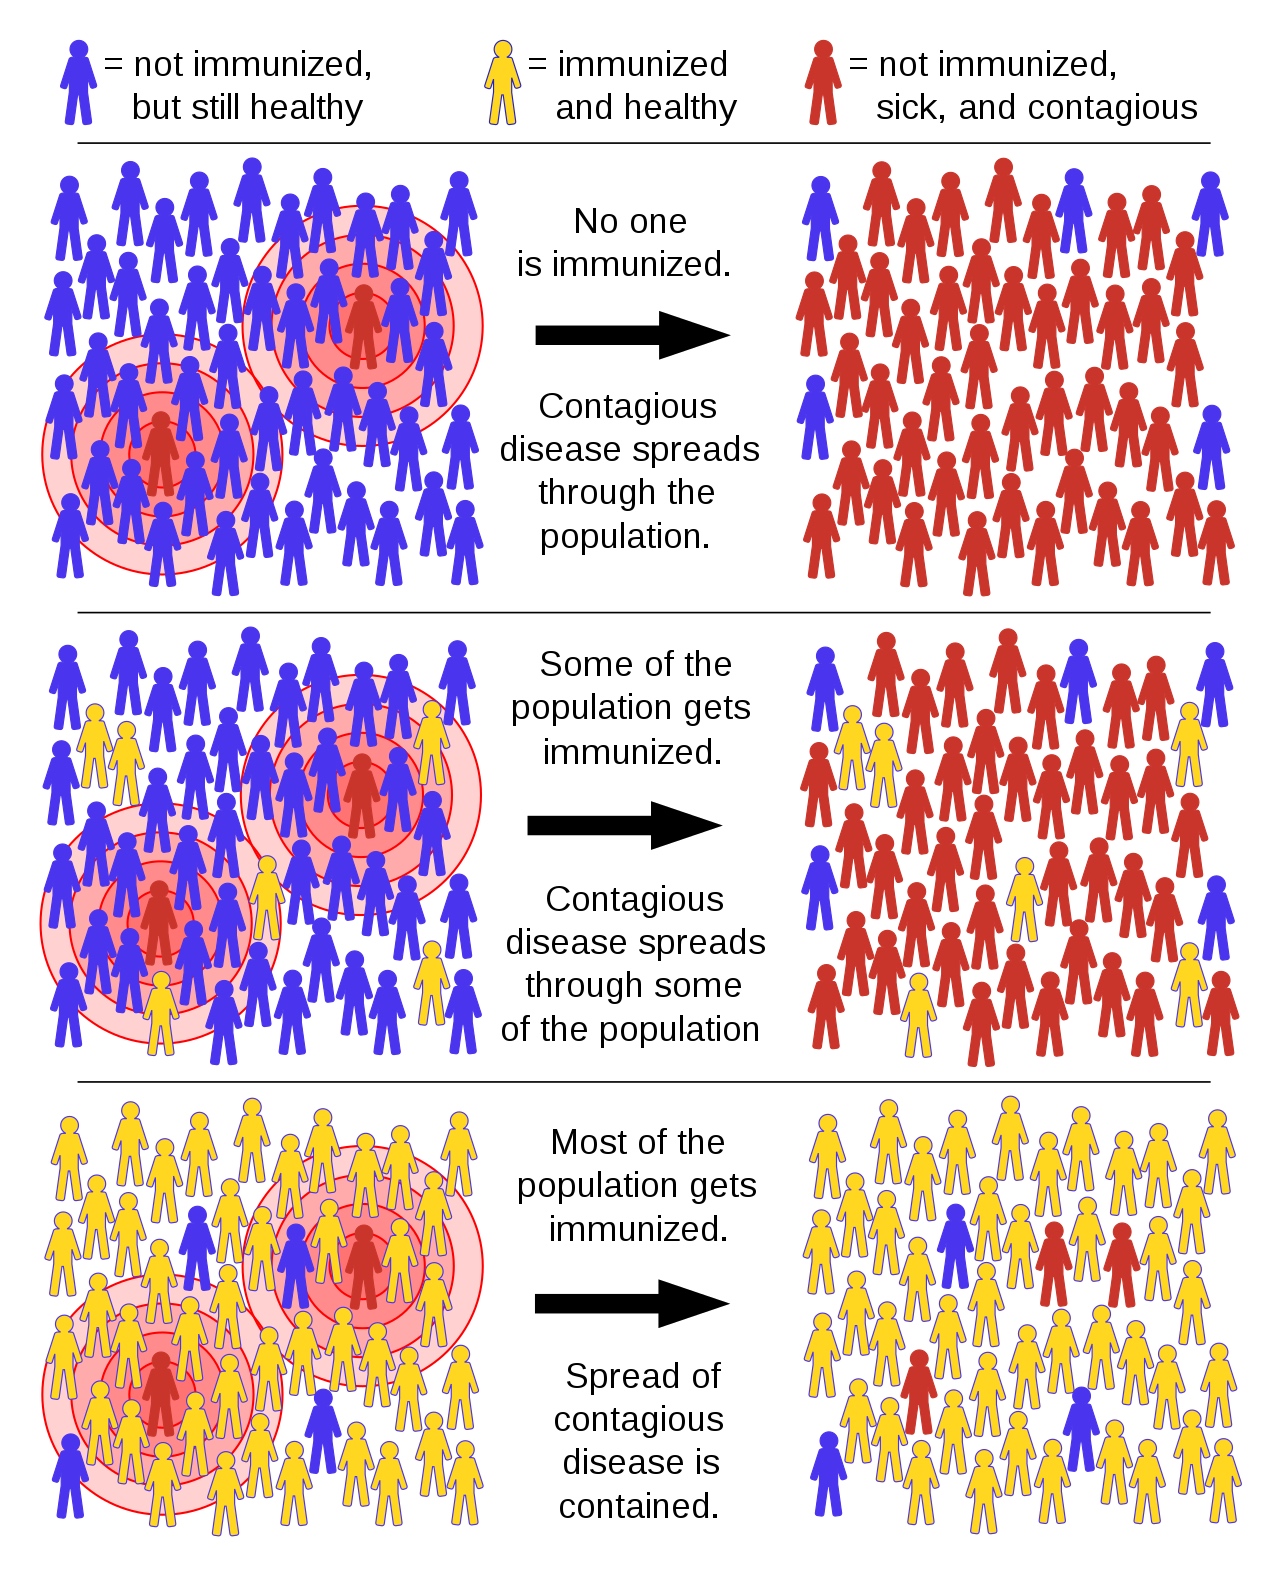 群体免疫原理示意图。紫色代表未对某种传染病具有免疫力但健康的人，黄色代表已经免疫且健康的人，红色代表未免疫、患病且有传染力的人。图片来源：Wikimedia Commons